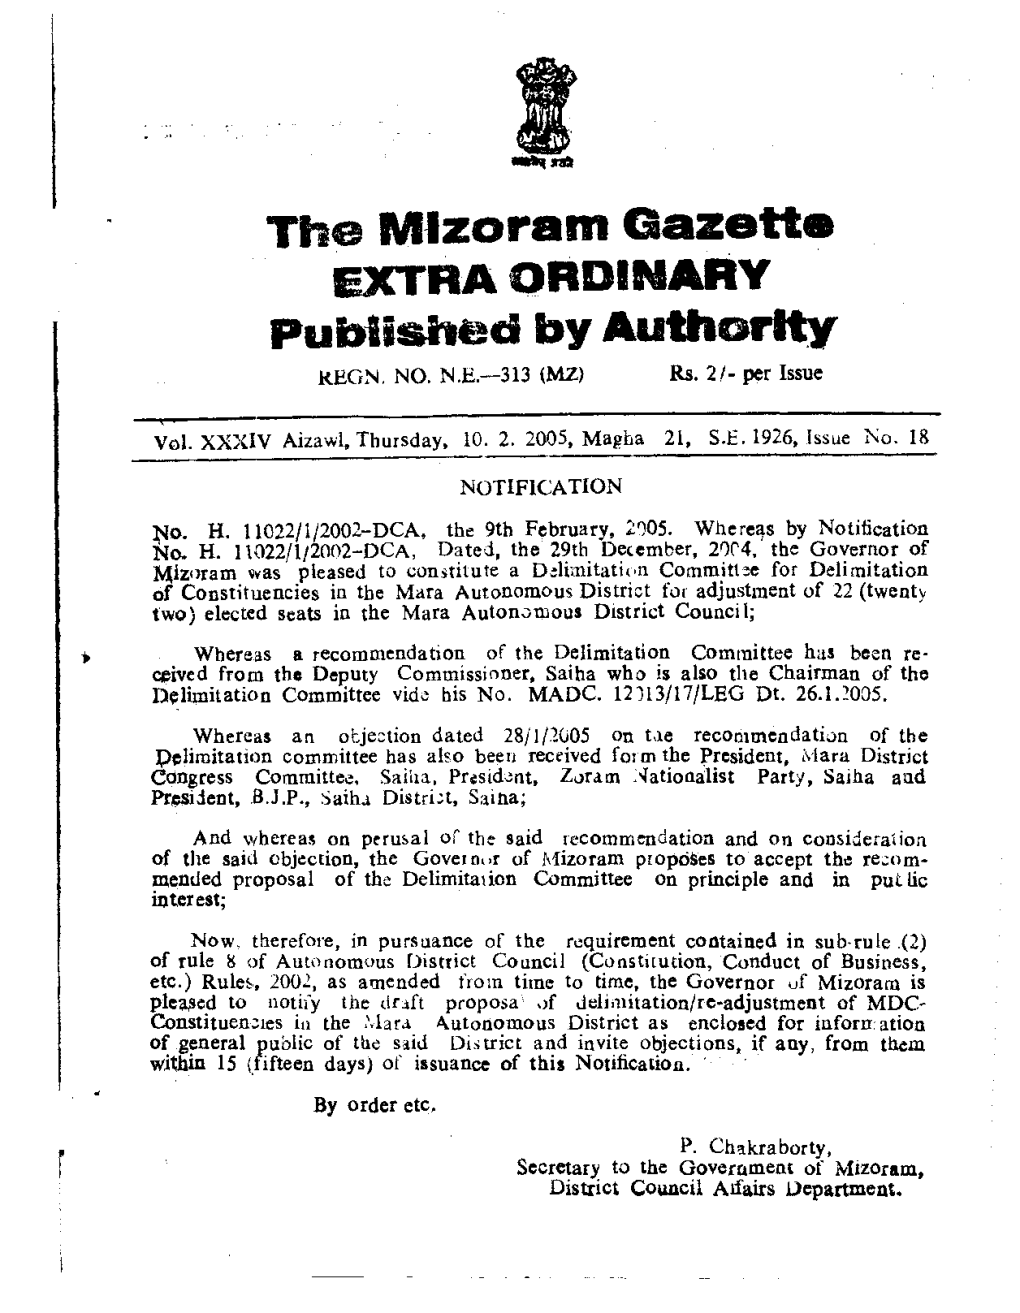 The Mlzoram Gazette